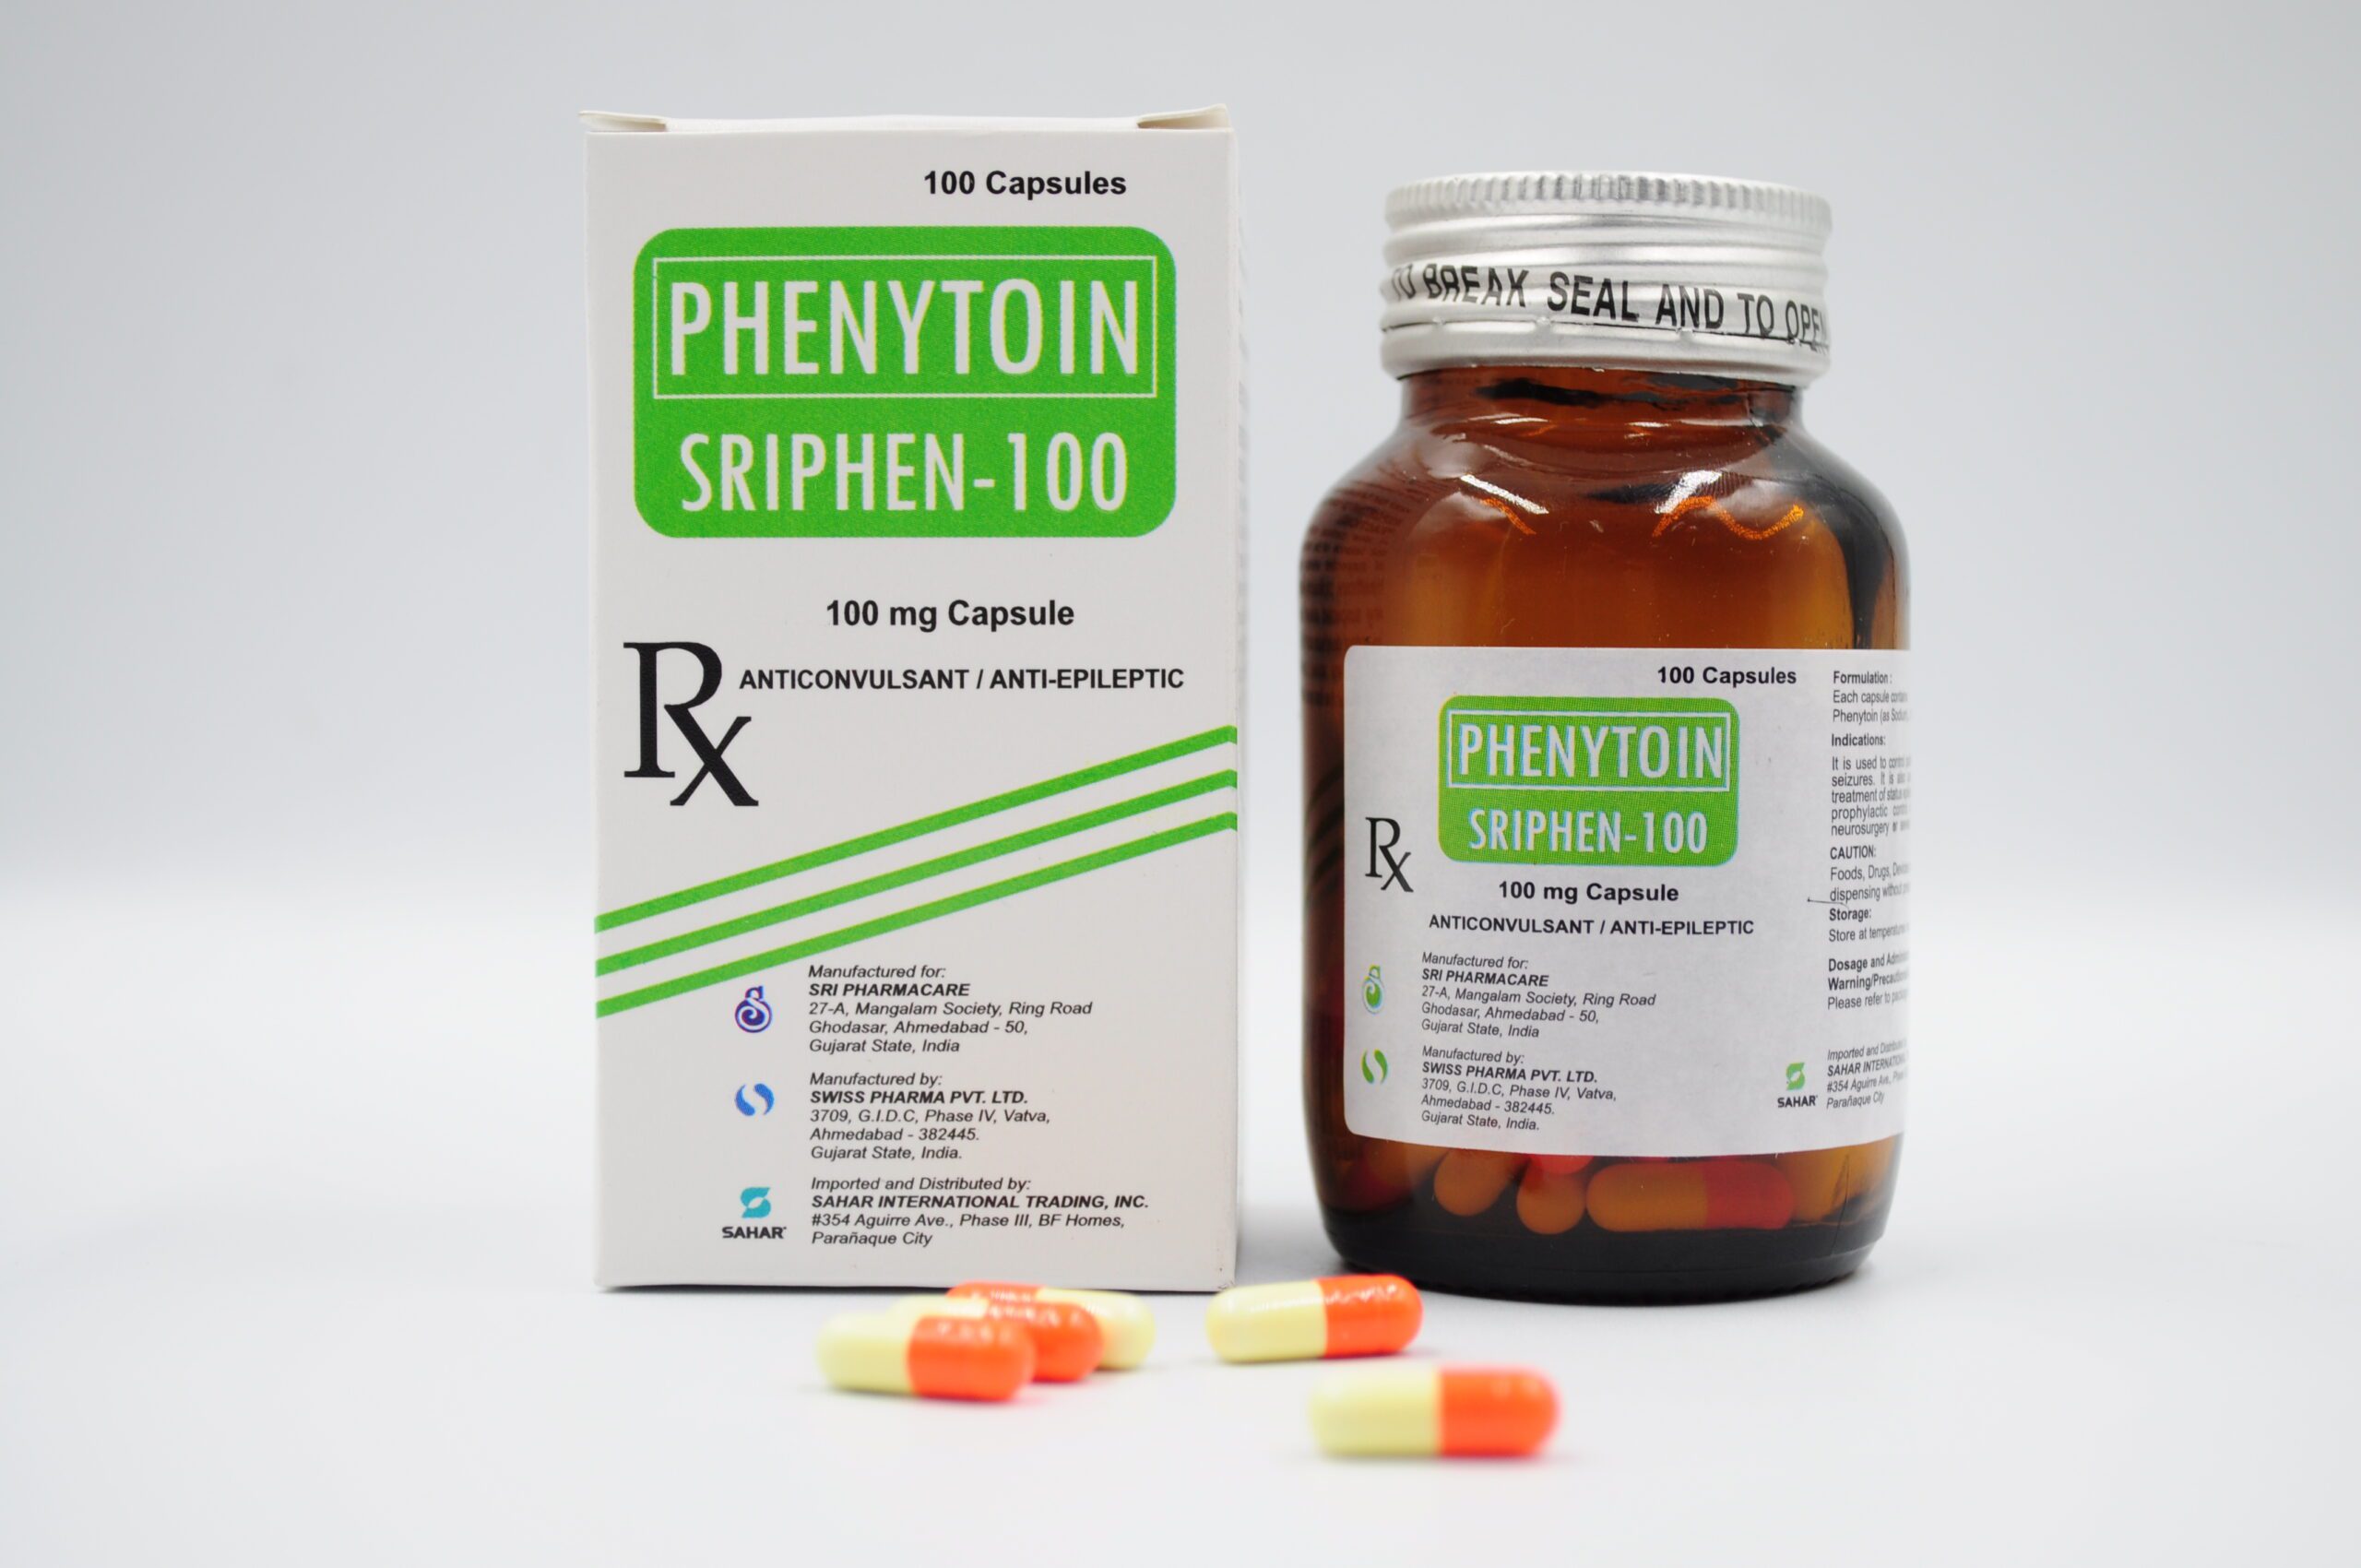 PHENYTOIN (SRIPHEN-100) 100 mg Capsule